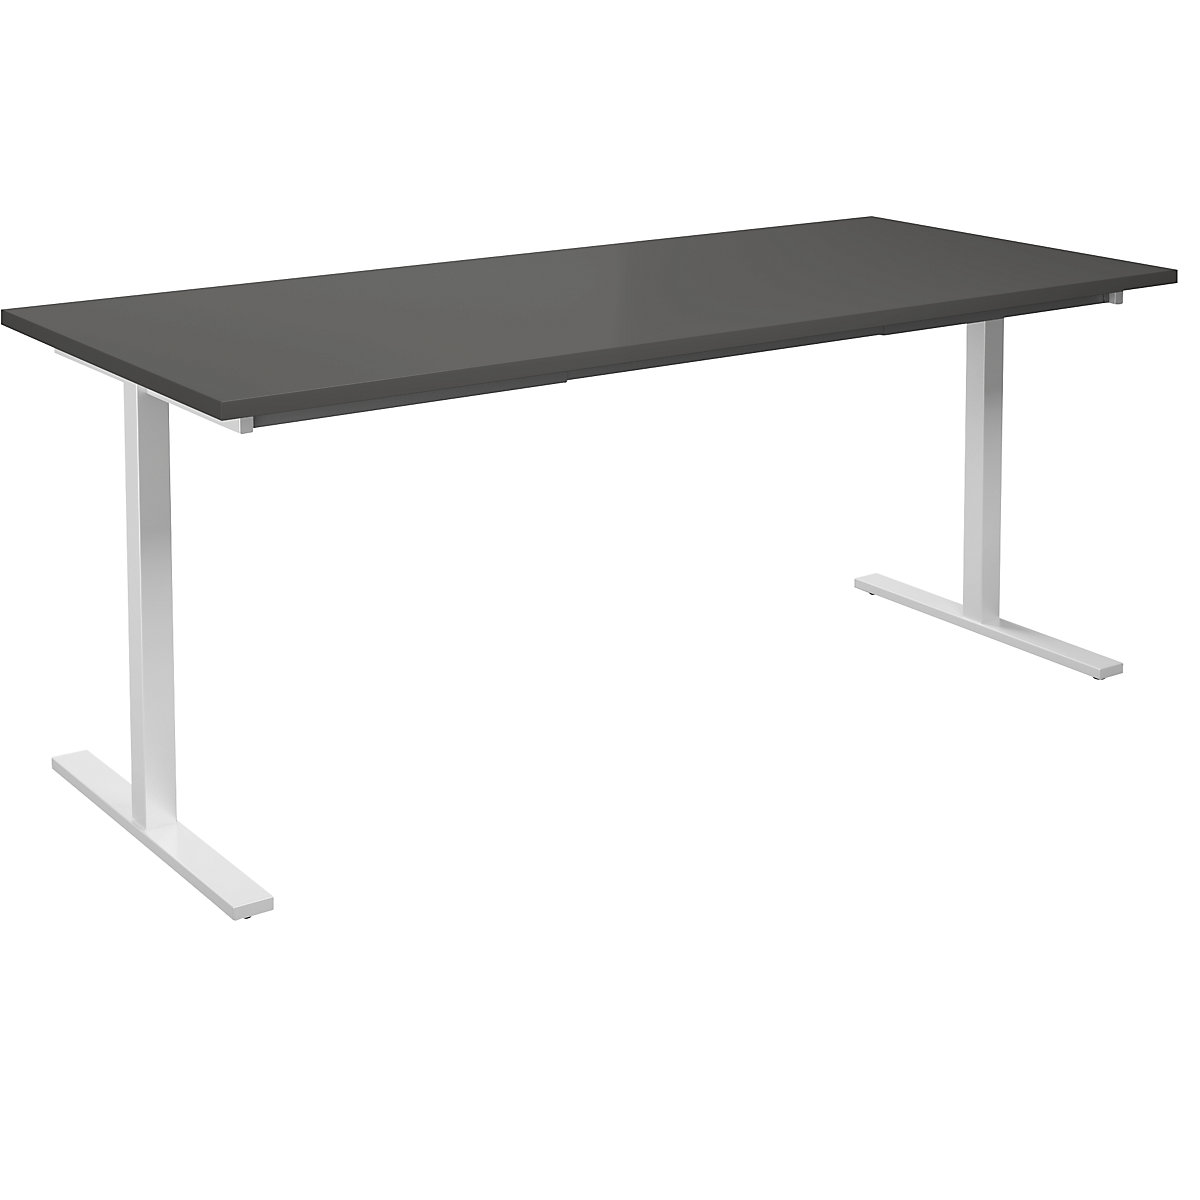 DUO-T multi-purpose desk, straight tabletop, WxD 1800 x 800 mm, dark grey, white-1